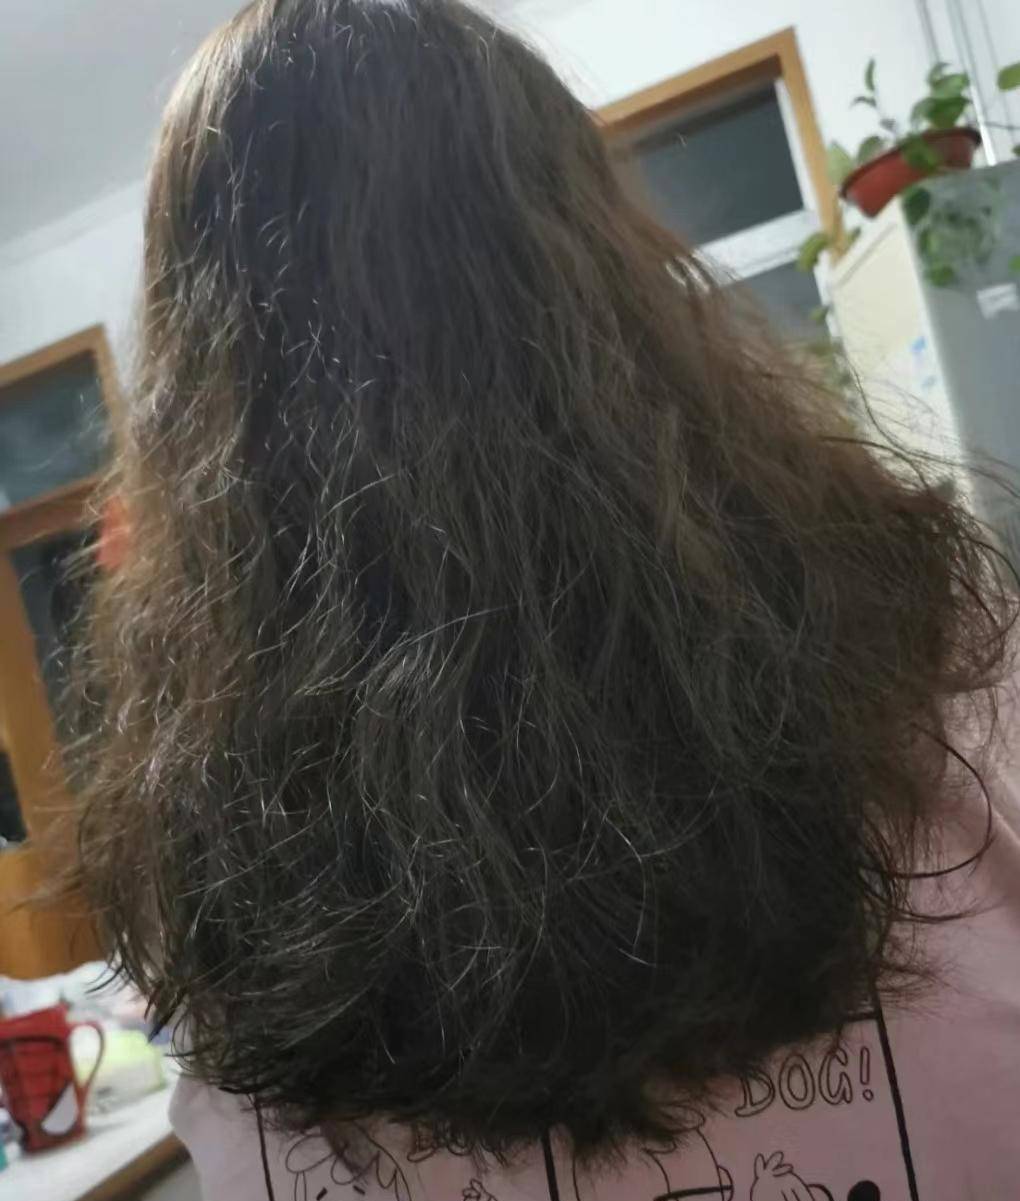 我的头发被烧焦了,我不想剪,有什么办法可以恢复或者修复吗?